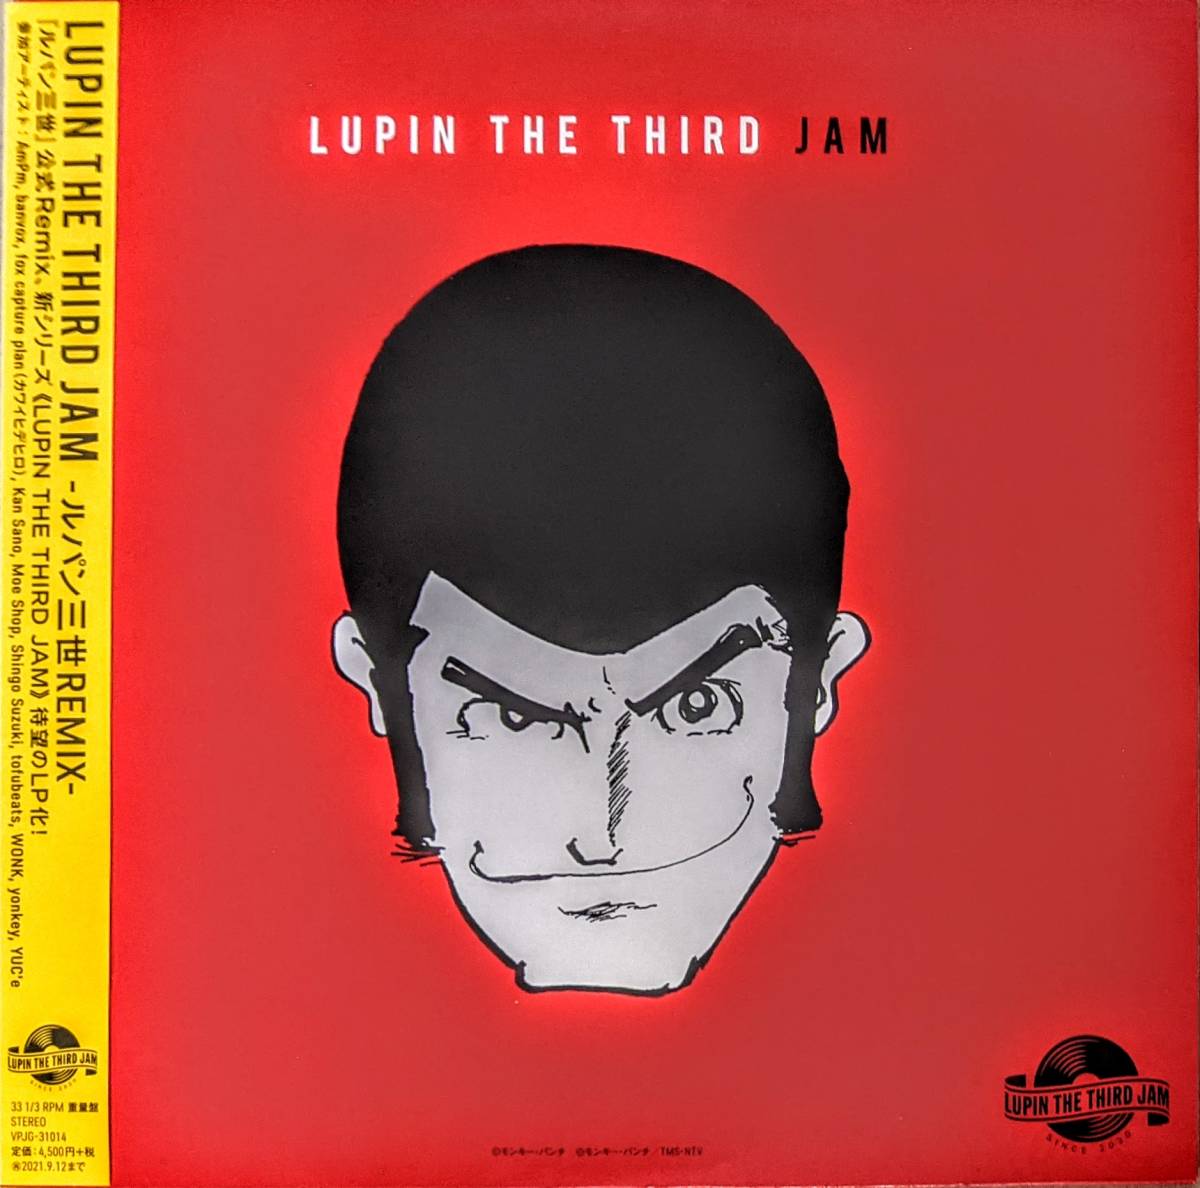 おすすめ】 Yuji 限定アナログ・レコード Remix Crew Jam Third The Lupin - Crew Jam ルパン三世 -  大野雄二 Ono - アニメソング - labelians.fr